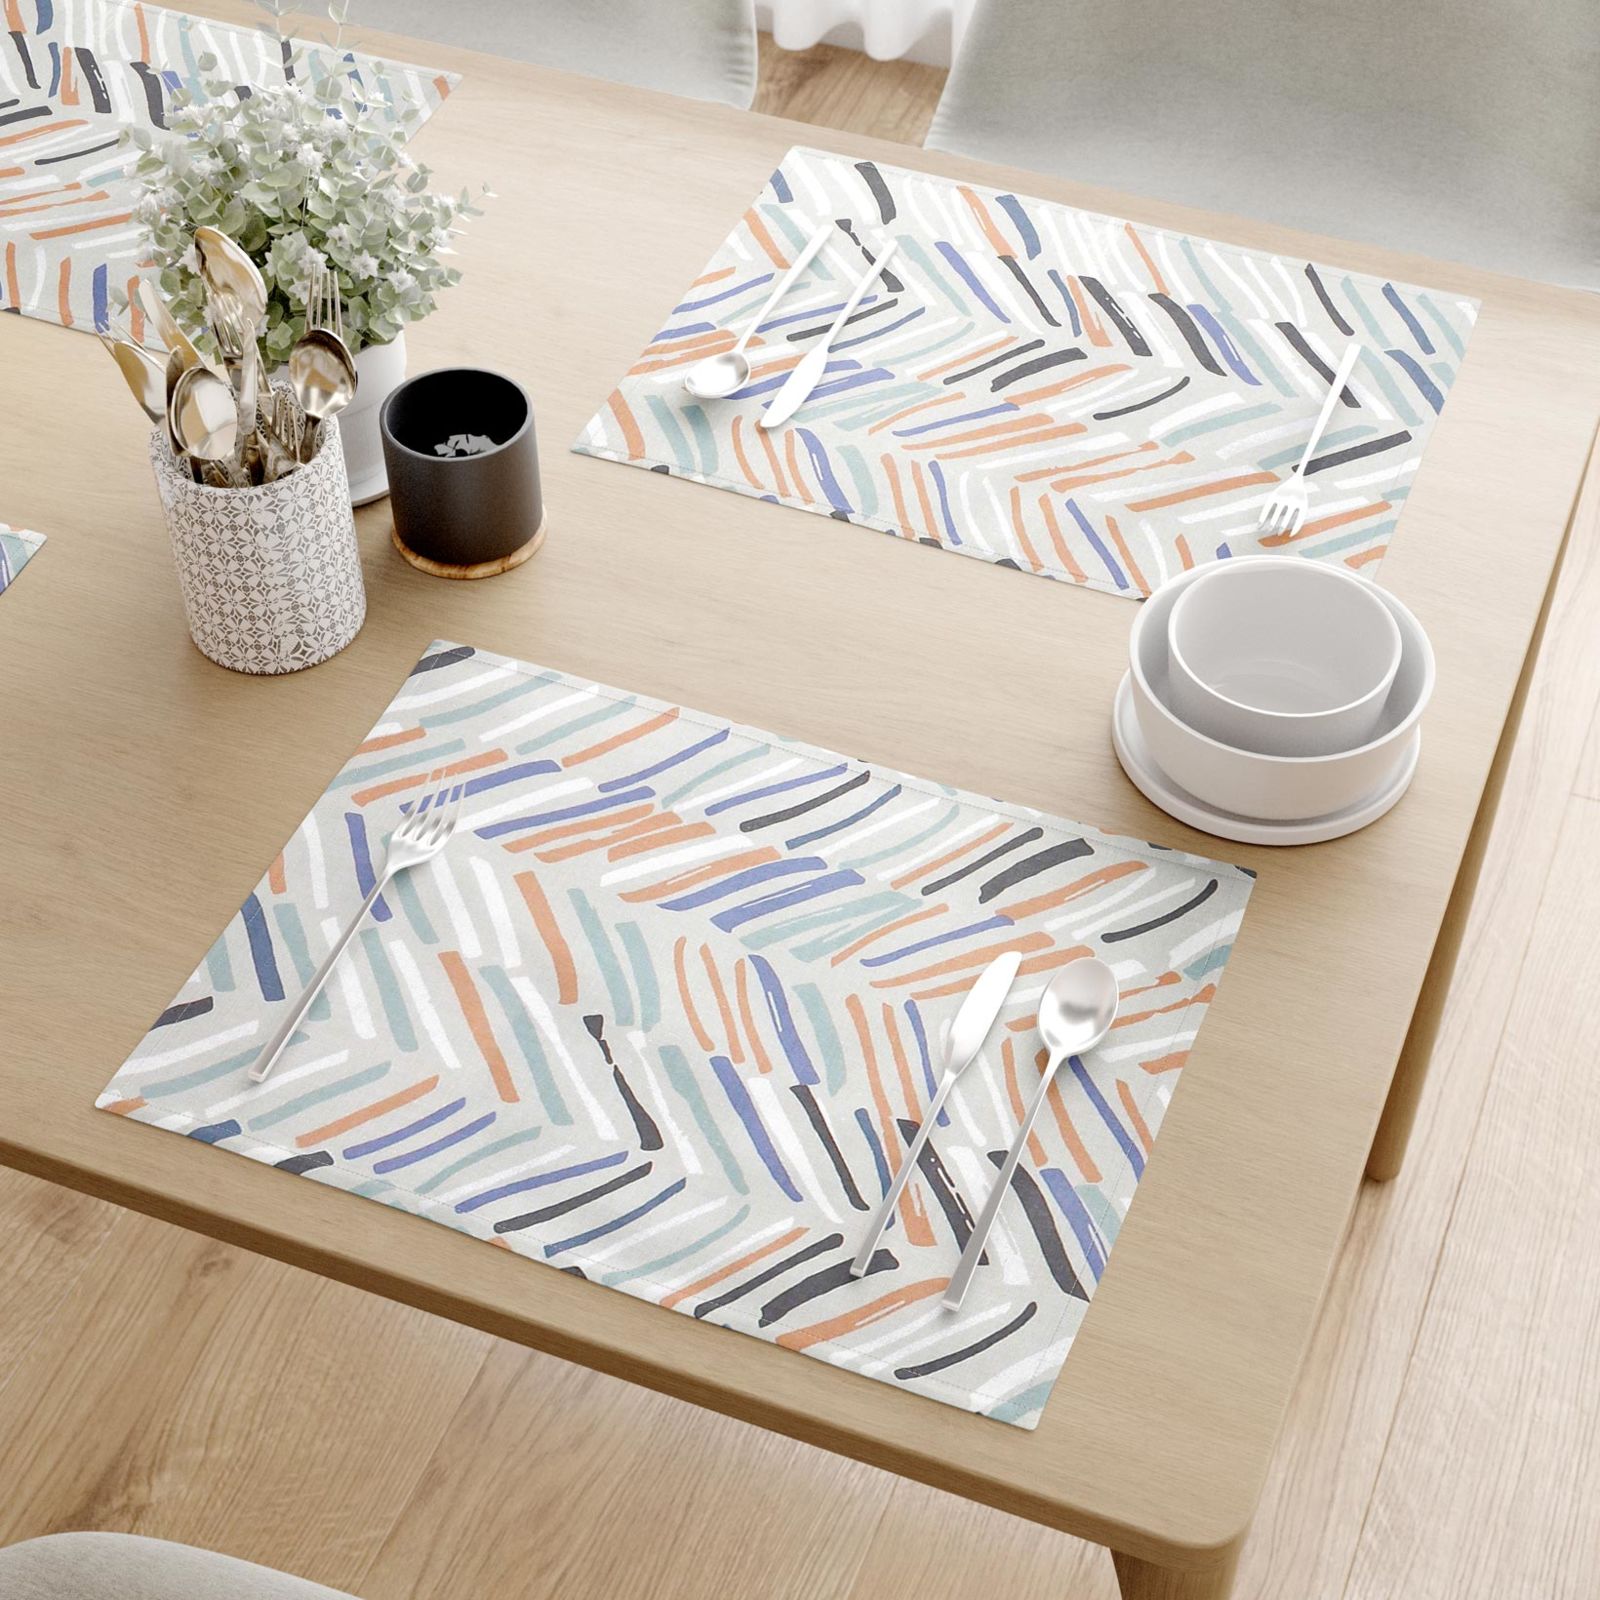 Podkładka na stół z płótna bawełnianego - malowane kolorowe kreski - 2szt.